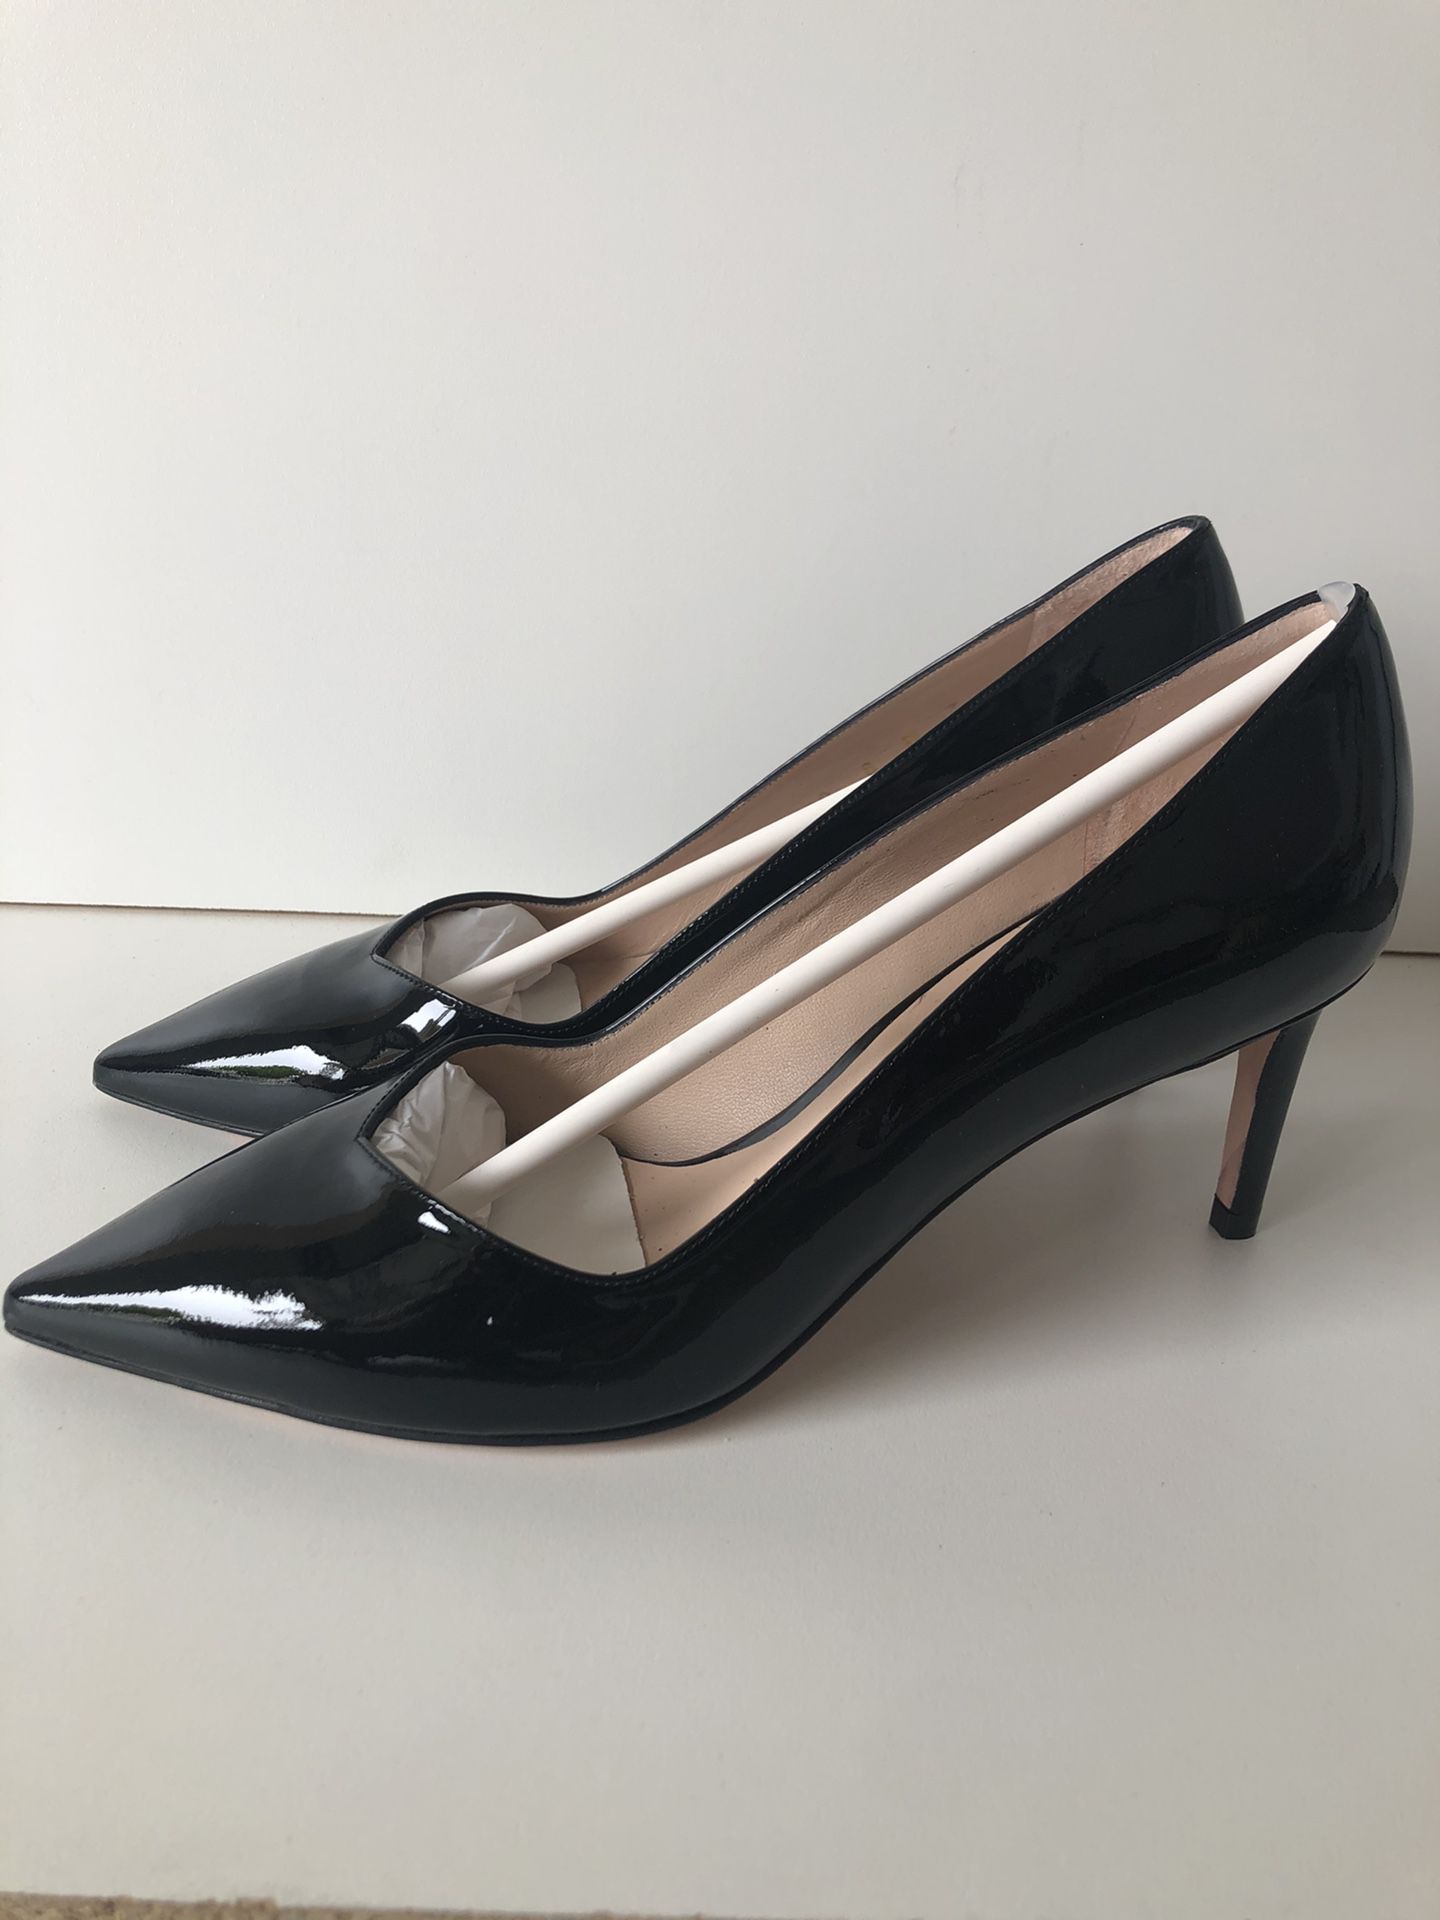 New - Stuart Weitzman high heels